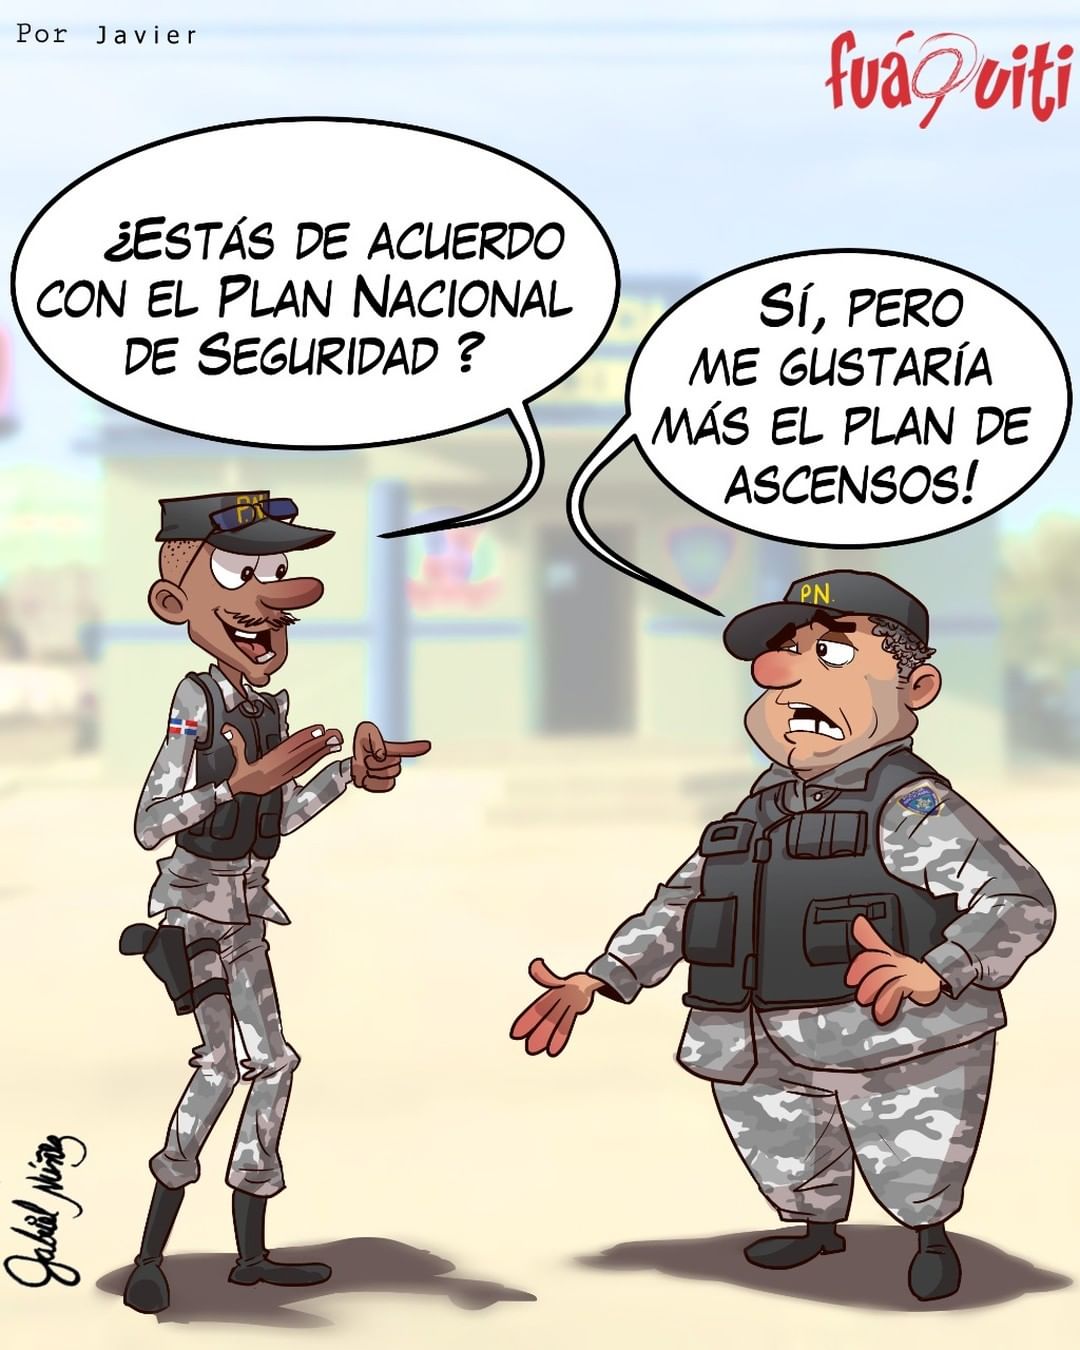 ¡Plan Nacional de Seguridad! – Caricatura Fuaquiti, 24 de Marzo, 2021